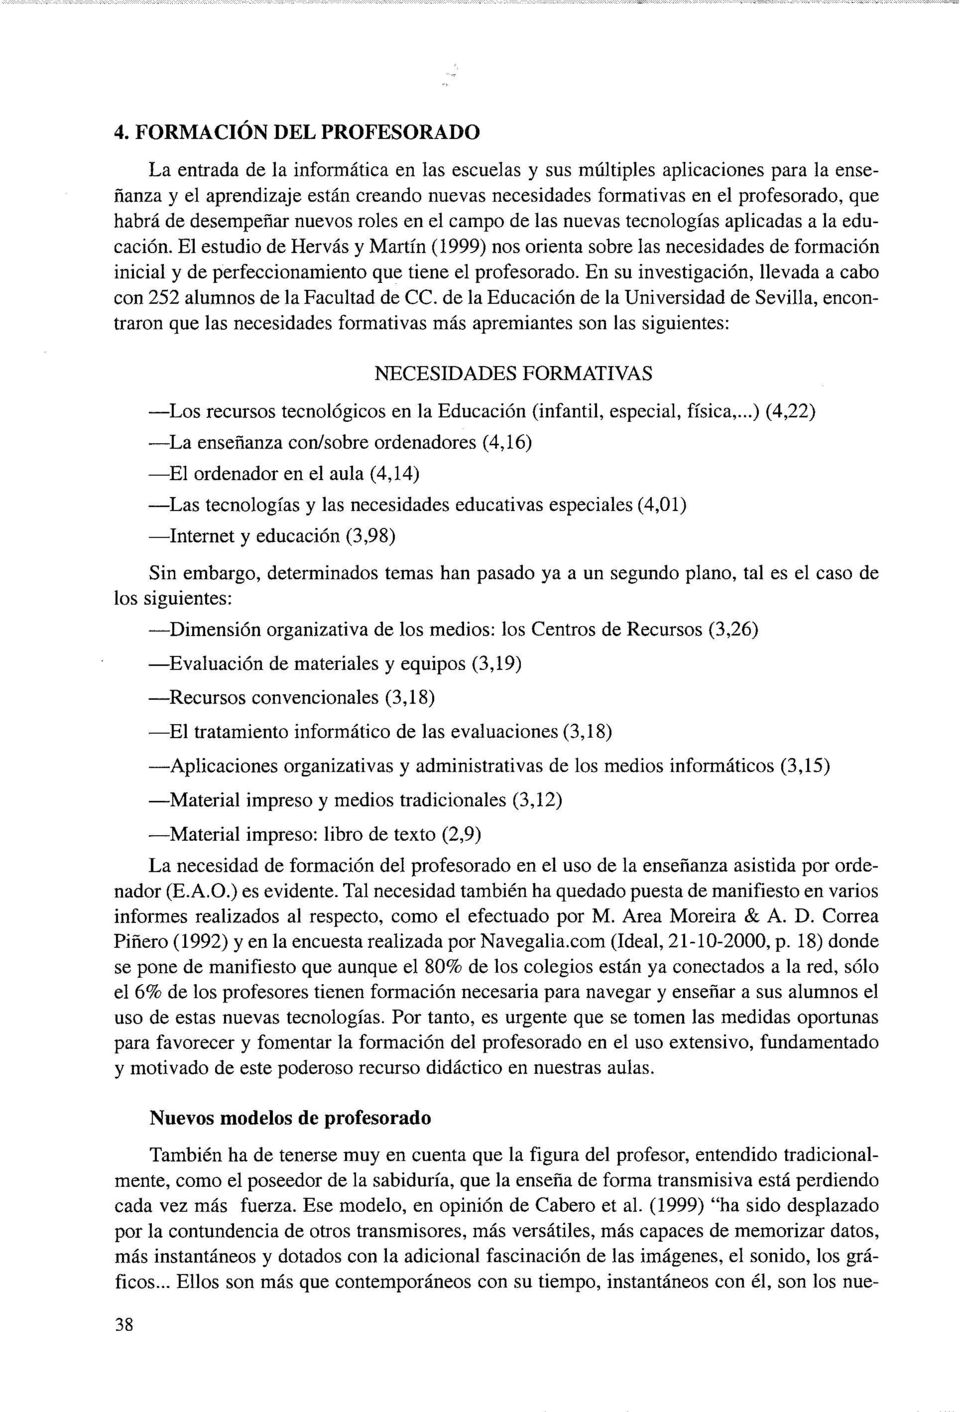 El estudio de Hervás y Martín (1999) nos orienta sobre las necesidades de formación inicial y de perfeccionamiento que tiene el profesorado.